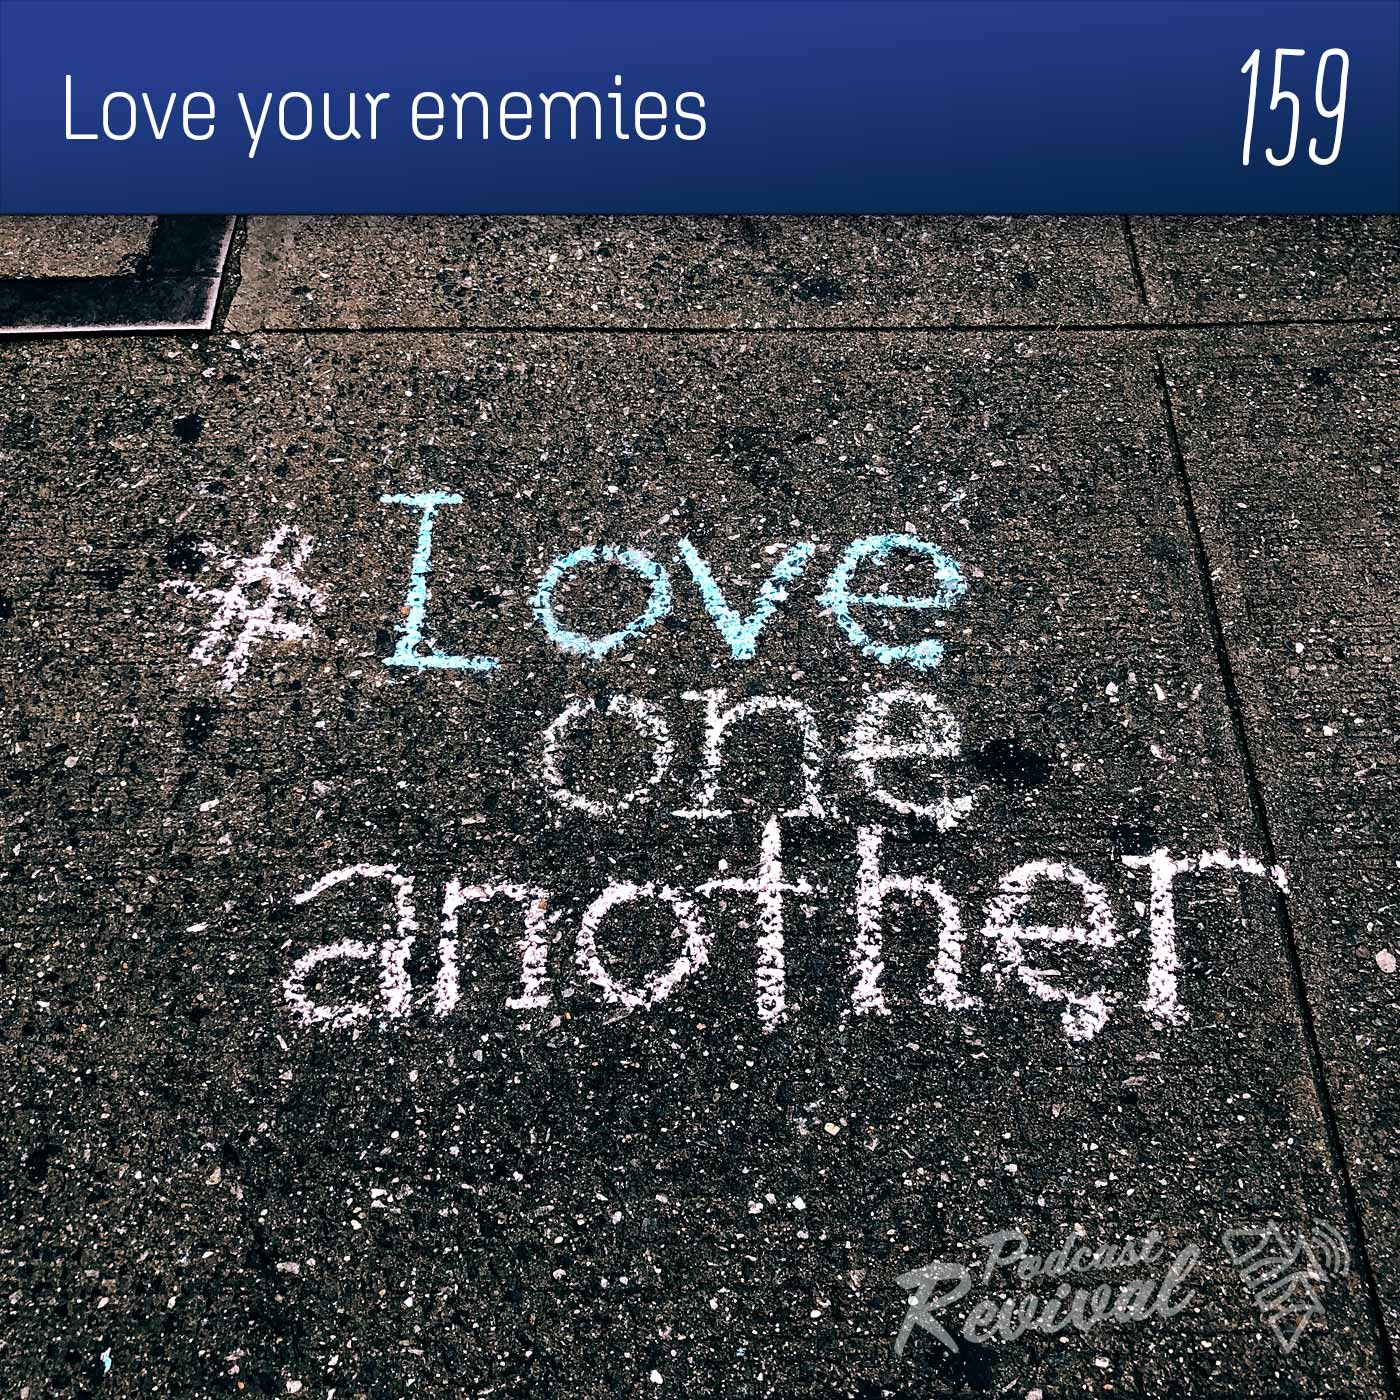 Love your enemies - Pr Tim Cope - 159